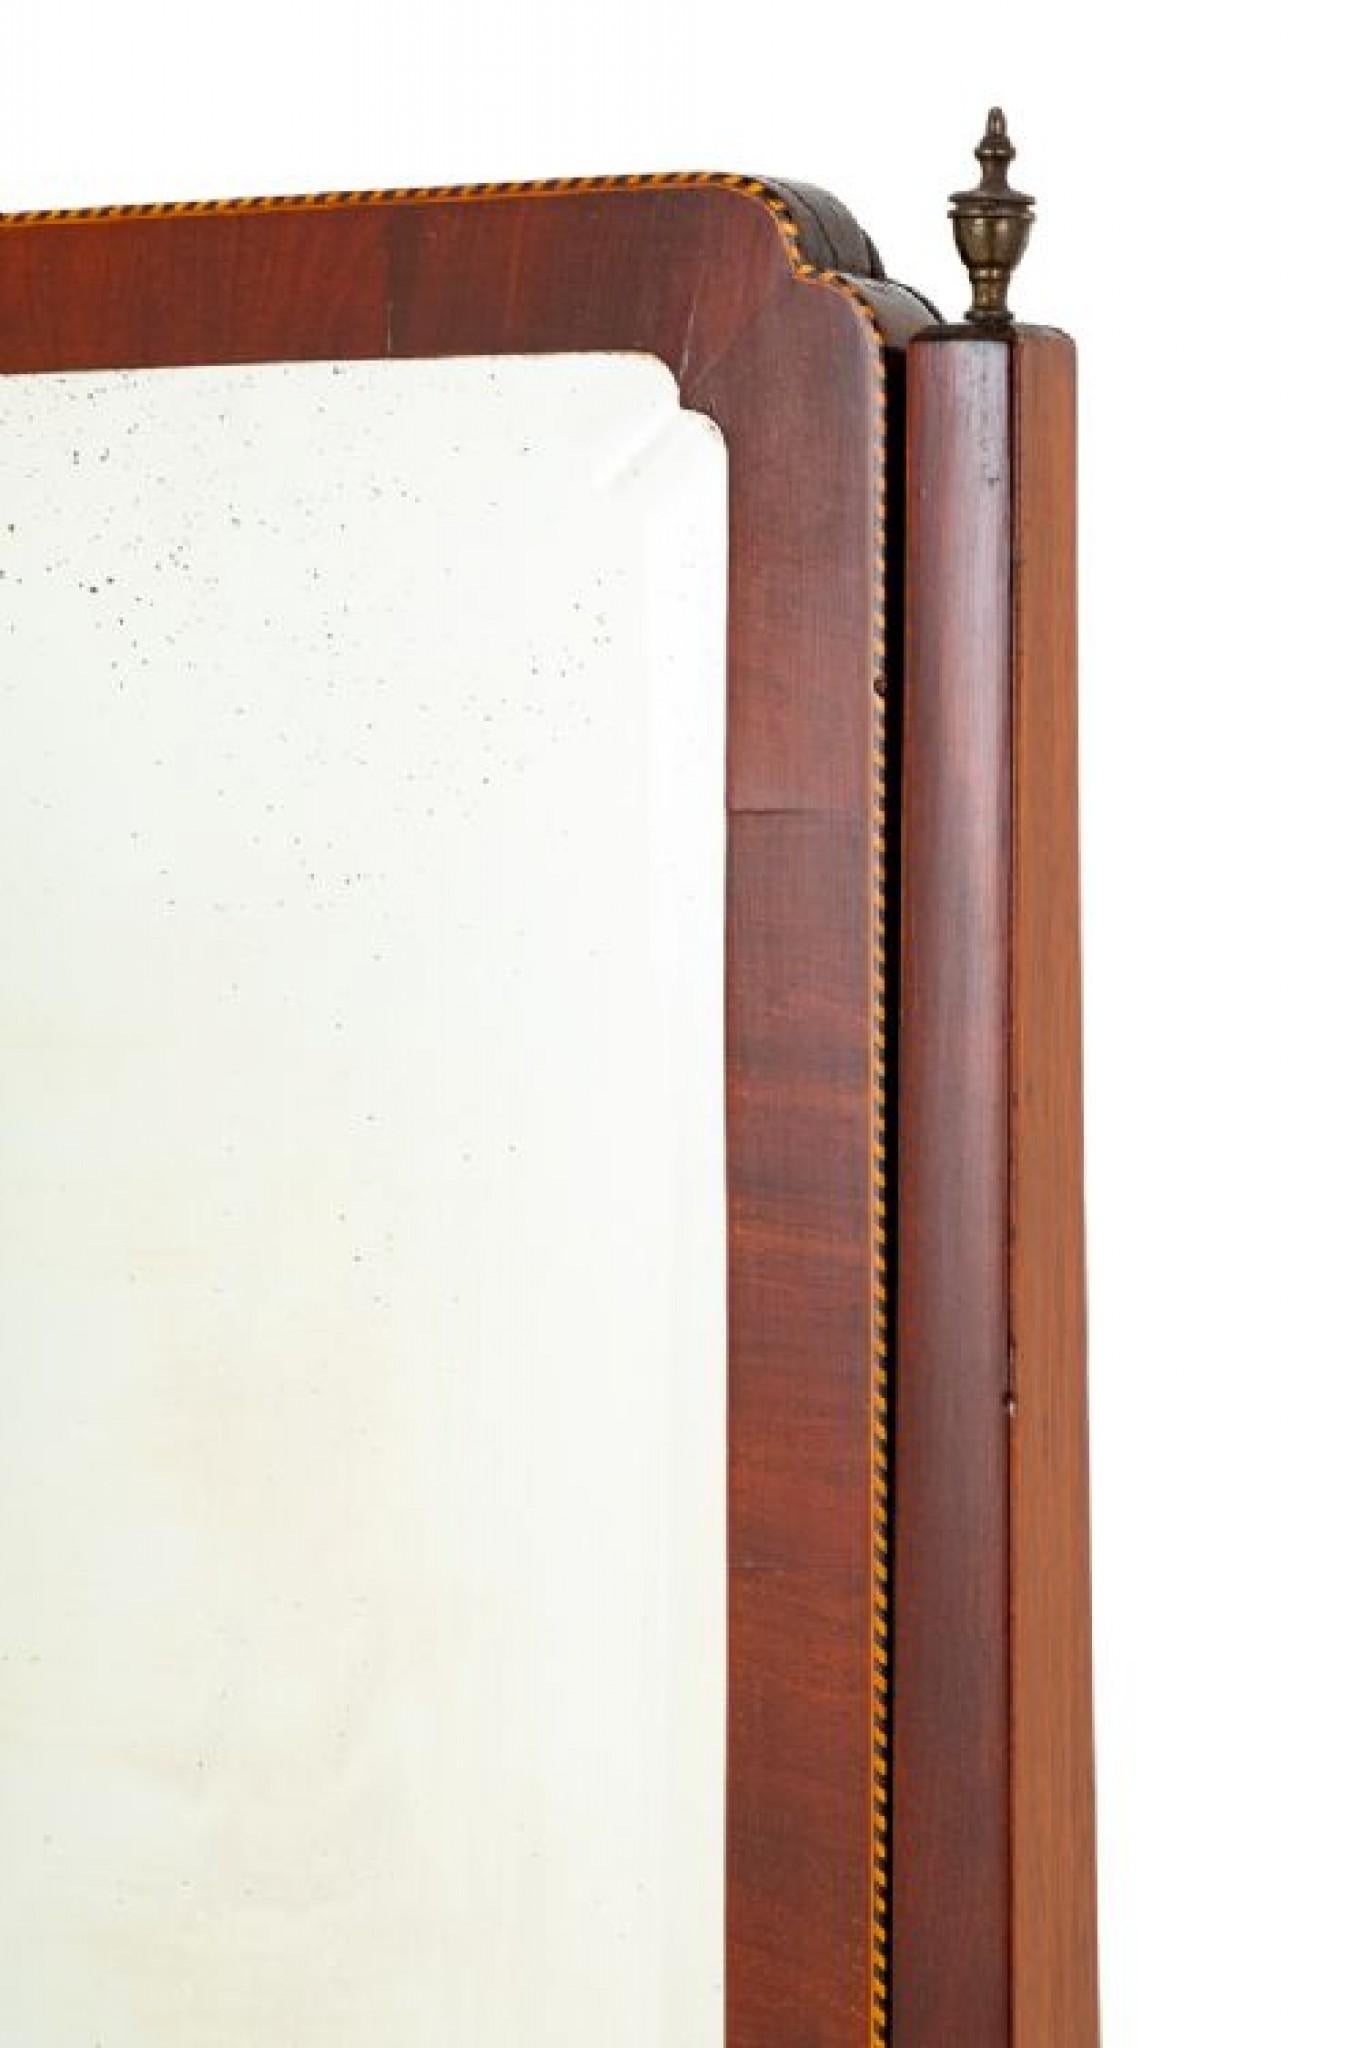 Eleganter Sheraton-Revival-Mahagoni-Cheval-Spiegel.
CIRCA 1890
Auf geformten und kannelierten Beinen mit Messingrollen stehend.
Die quadratischen Pfosten sind mit gedrechselten Endstücken versehen.
Der gesamte Spiegel hat schachbrettartige